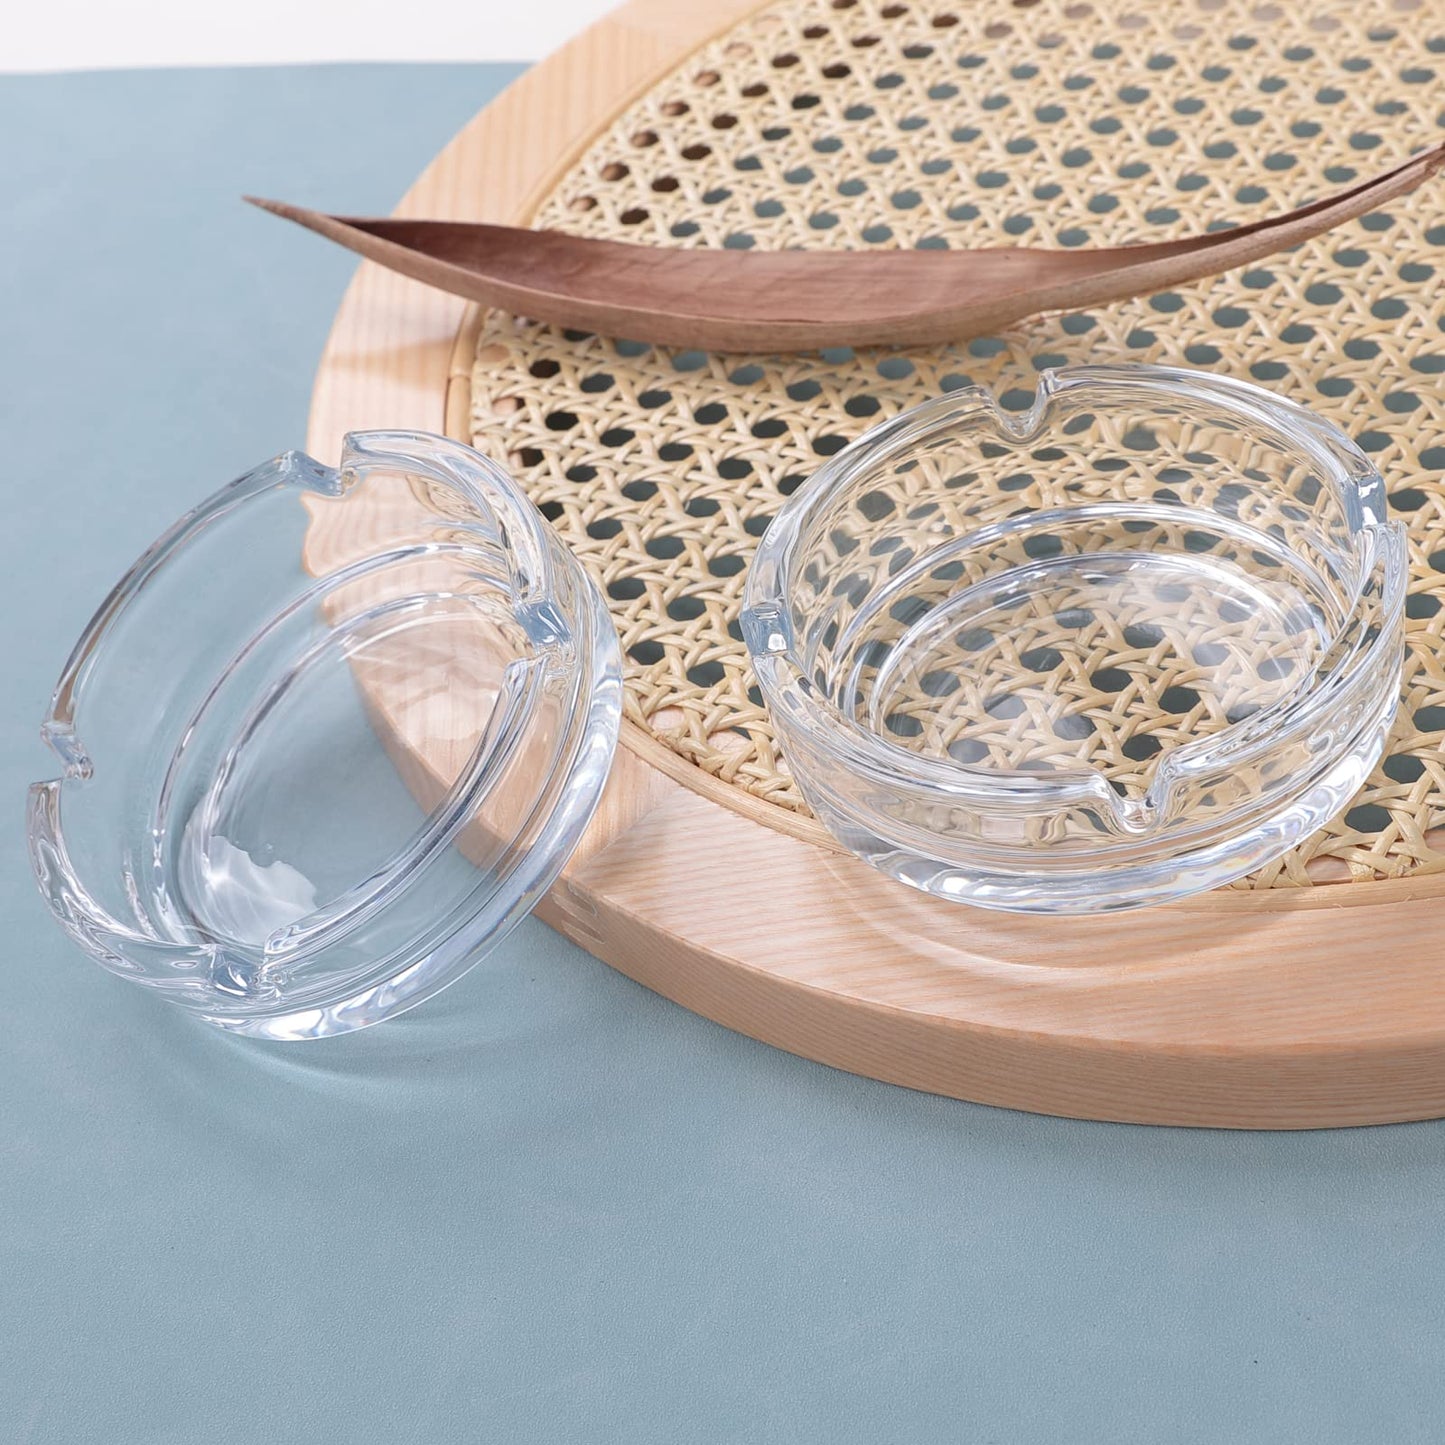 Kuber Industries Decorative Ash tray StylishRound Shape Pack of 2 Transparent